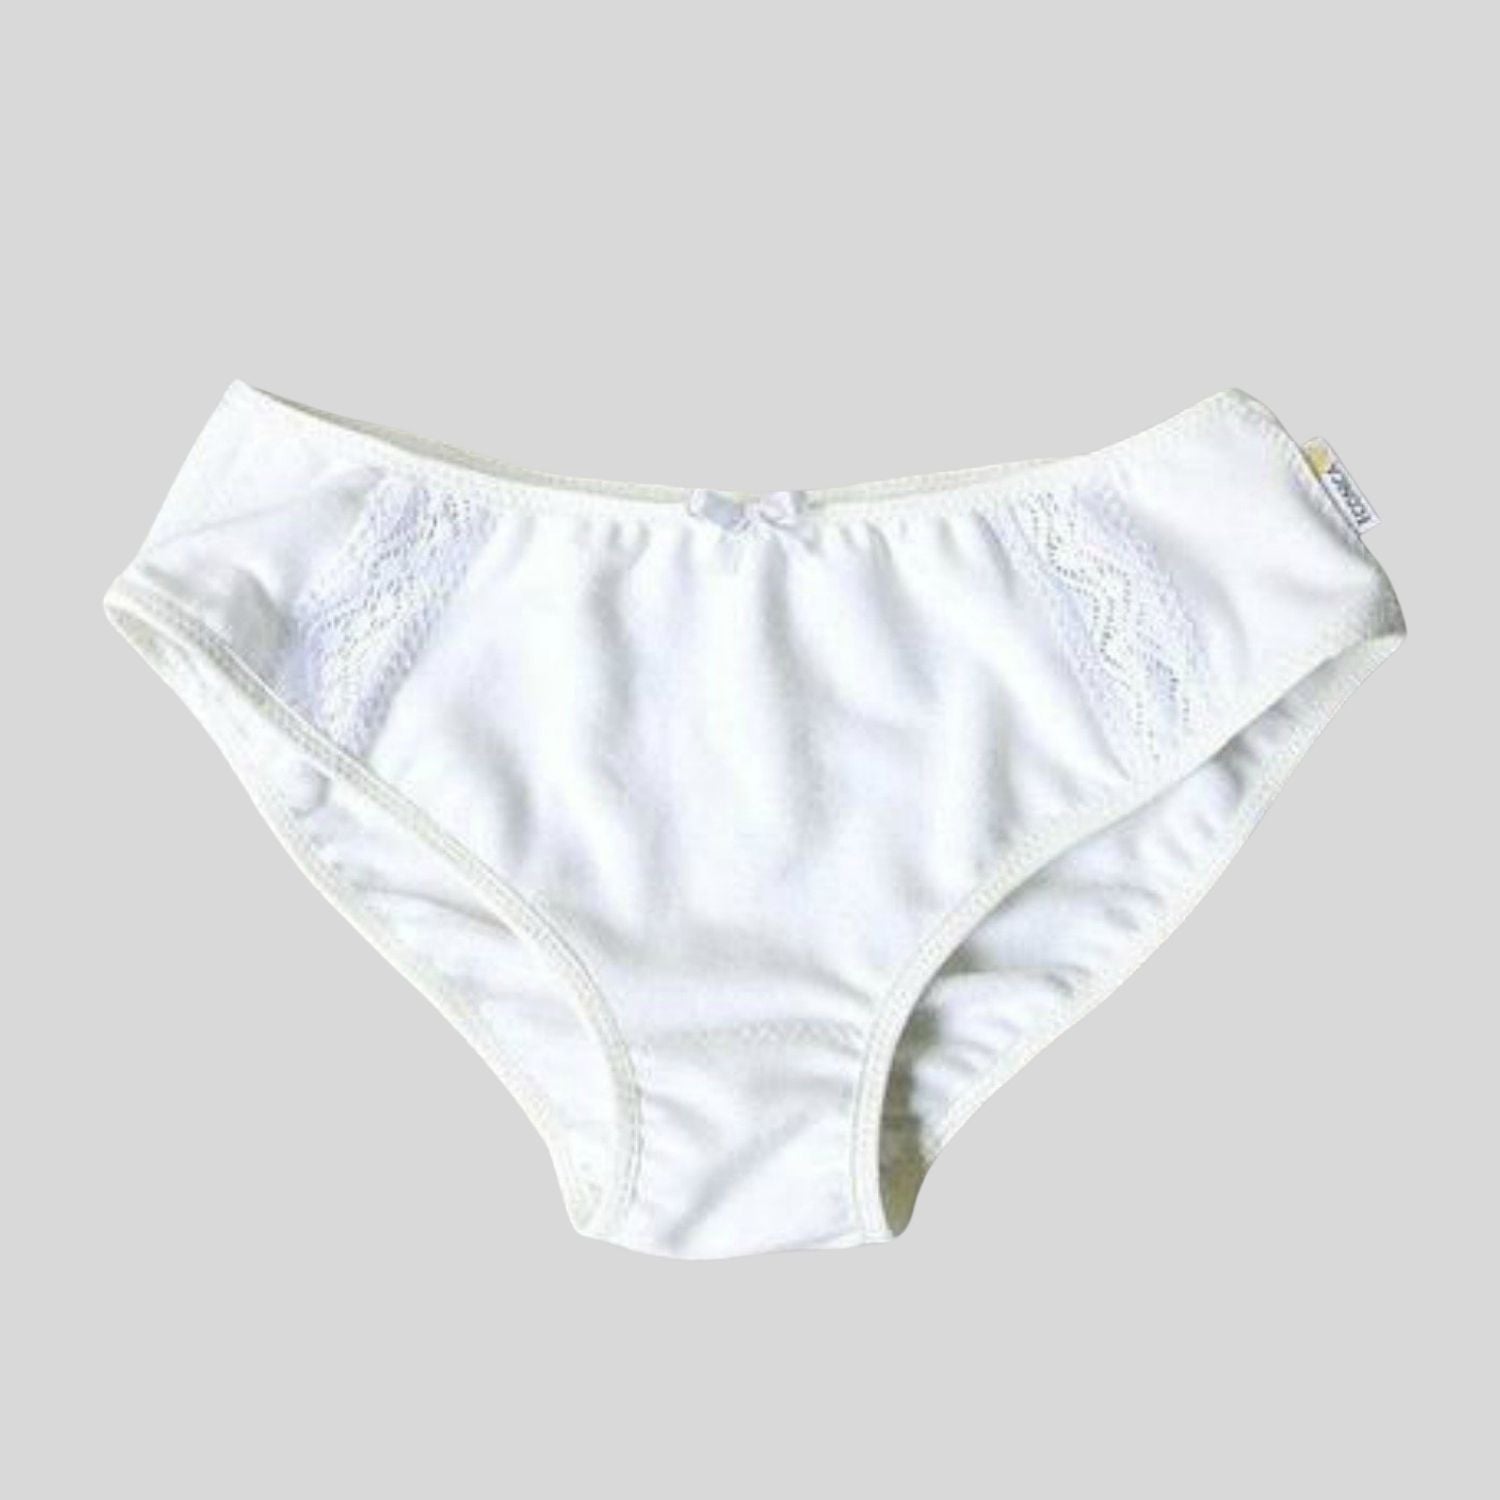 Fancy white panties 100% organic cotton - Germaine des prés –  germainedespres